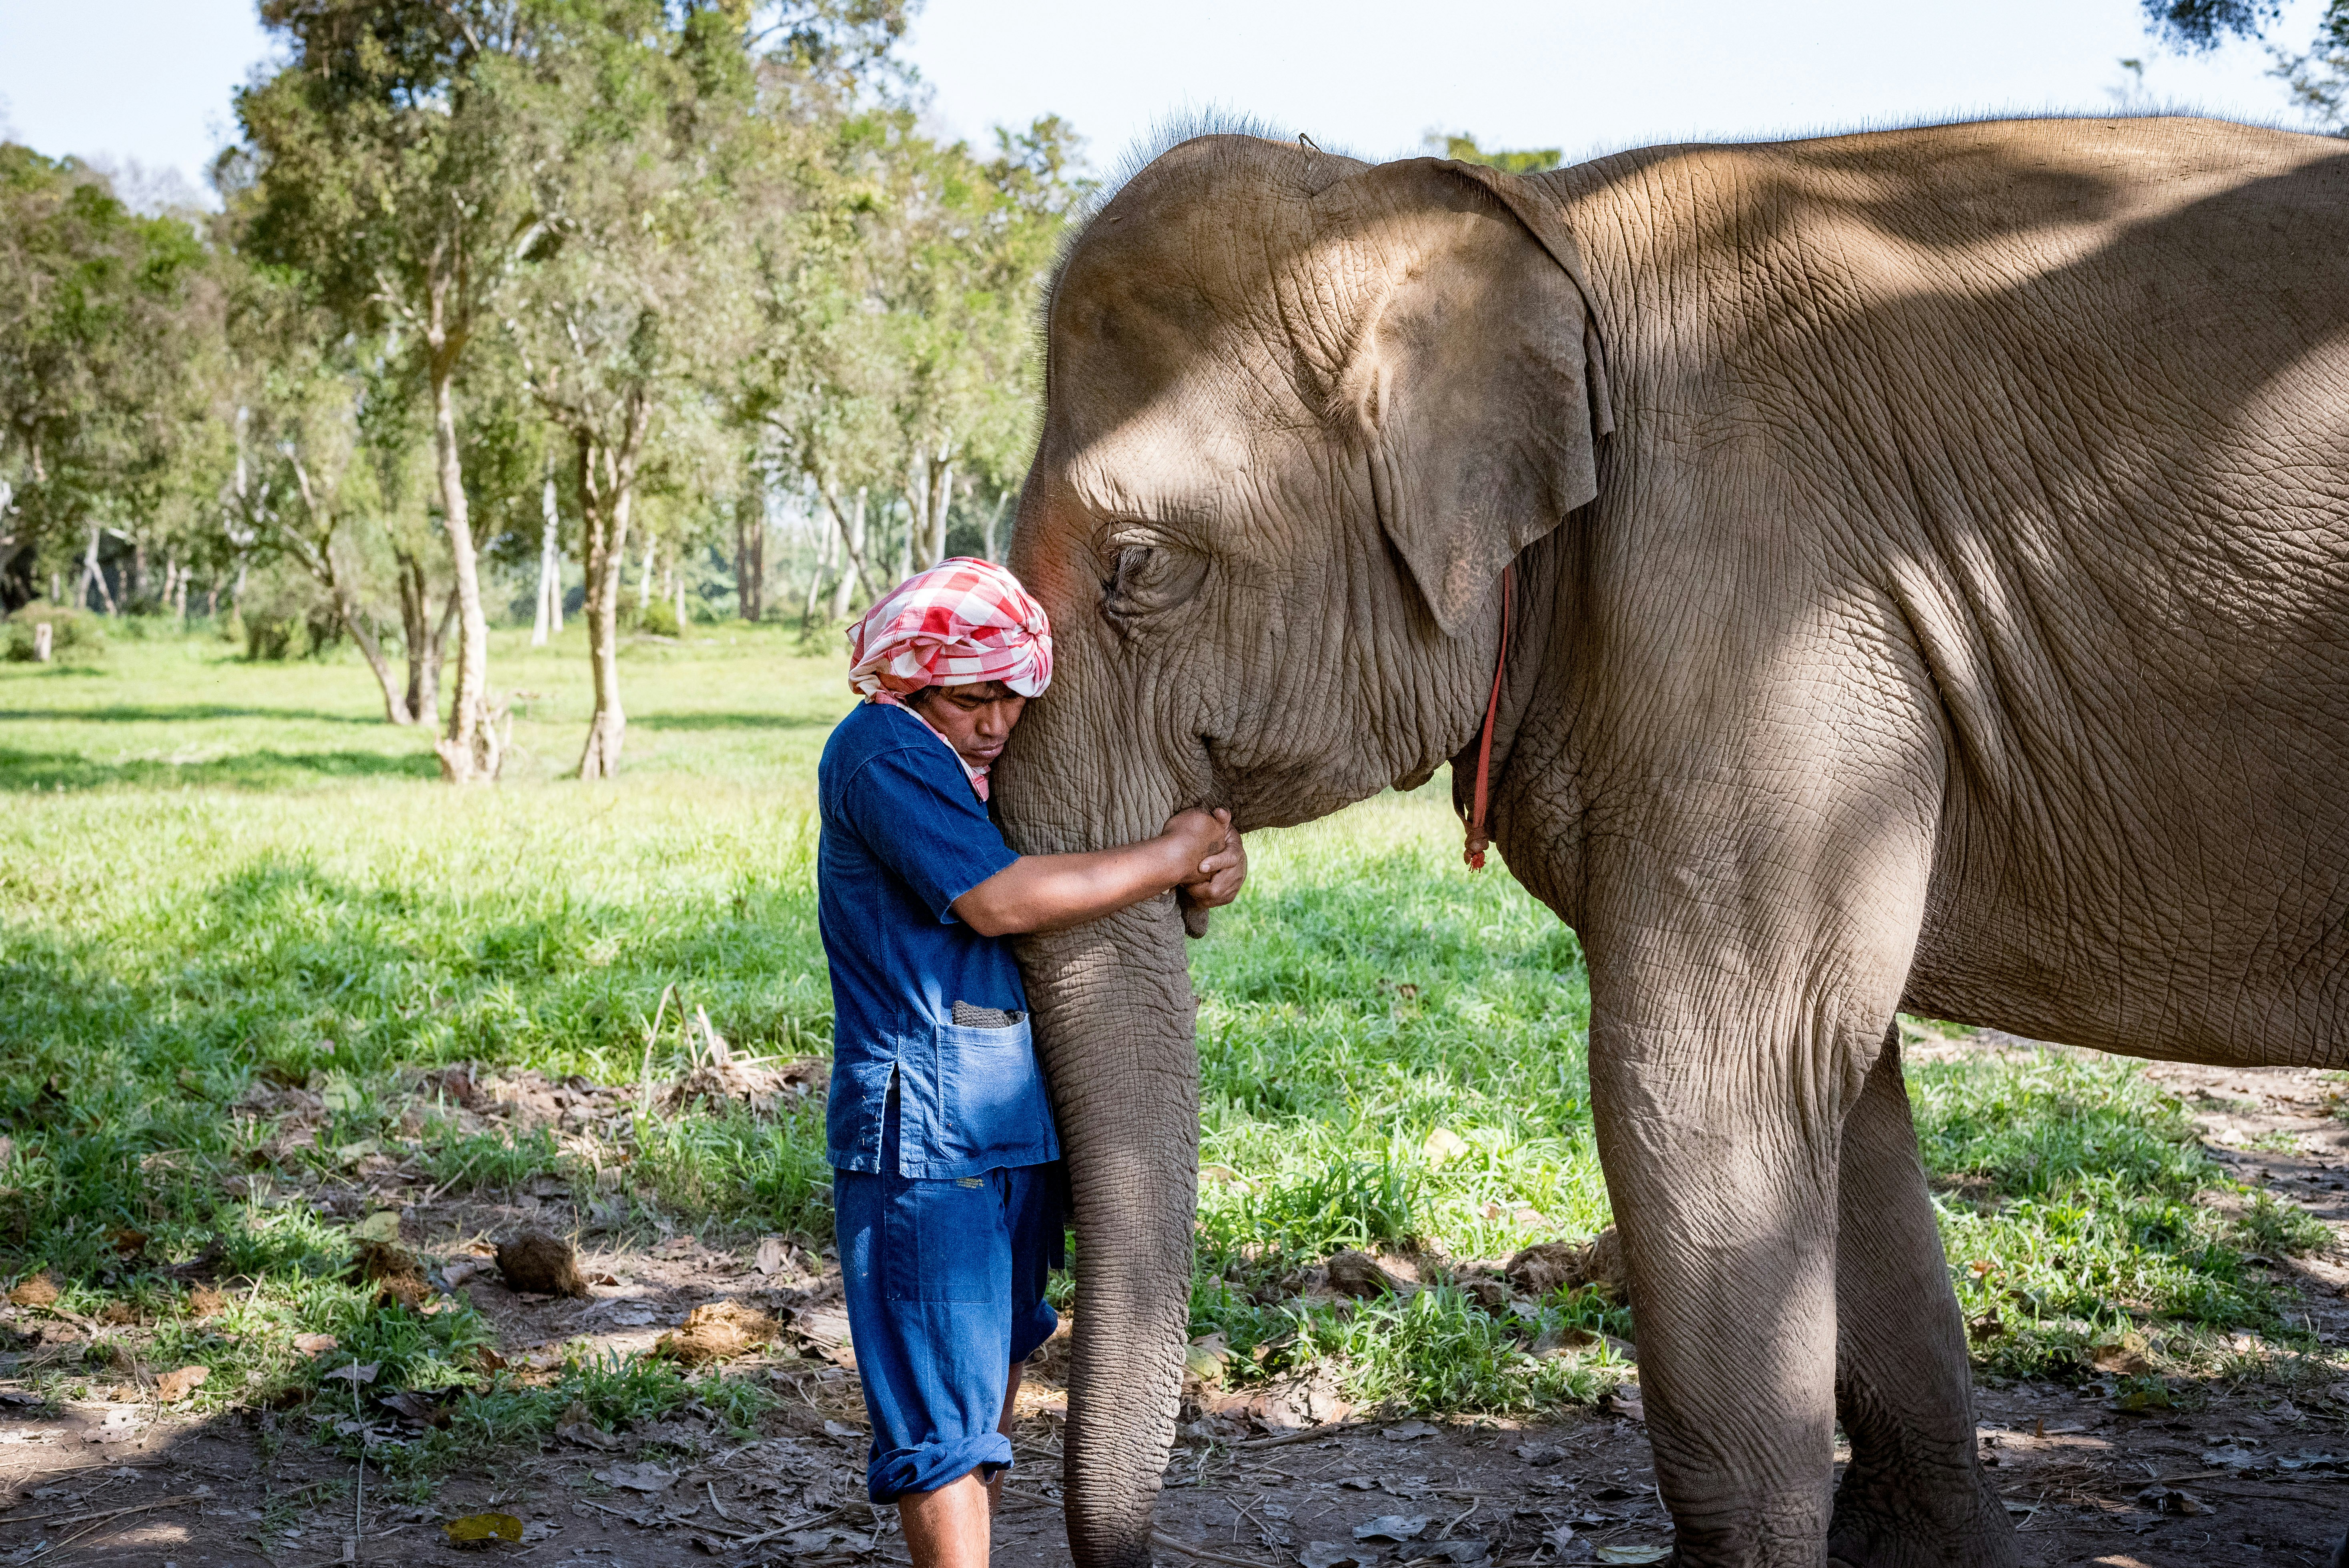 Um cornaca abraça a tromba de seu elefante em um gesto gentil e afetuoso de amor